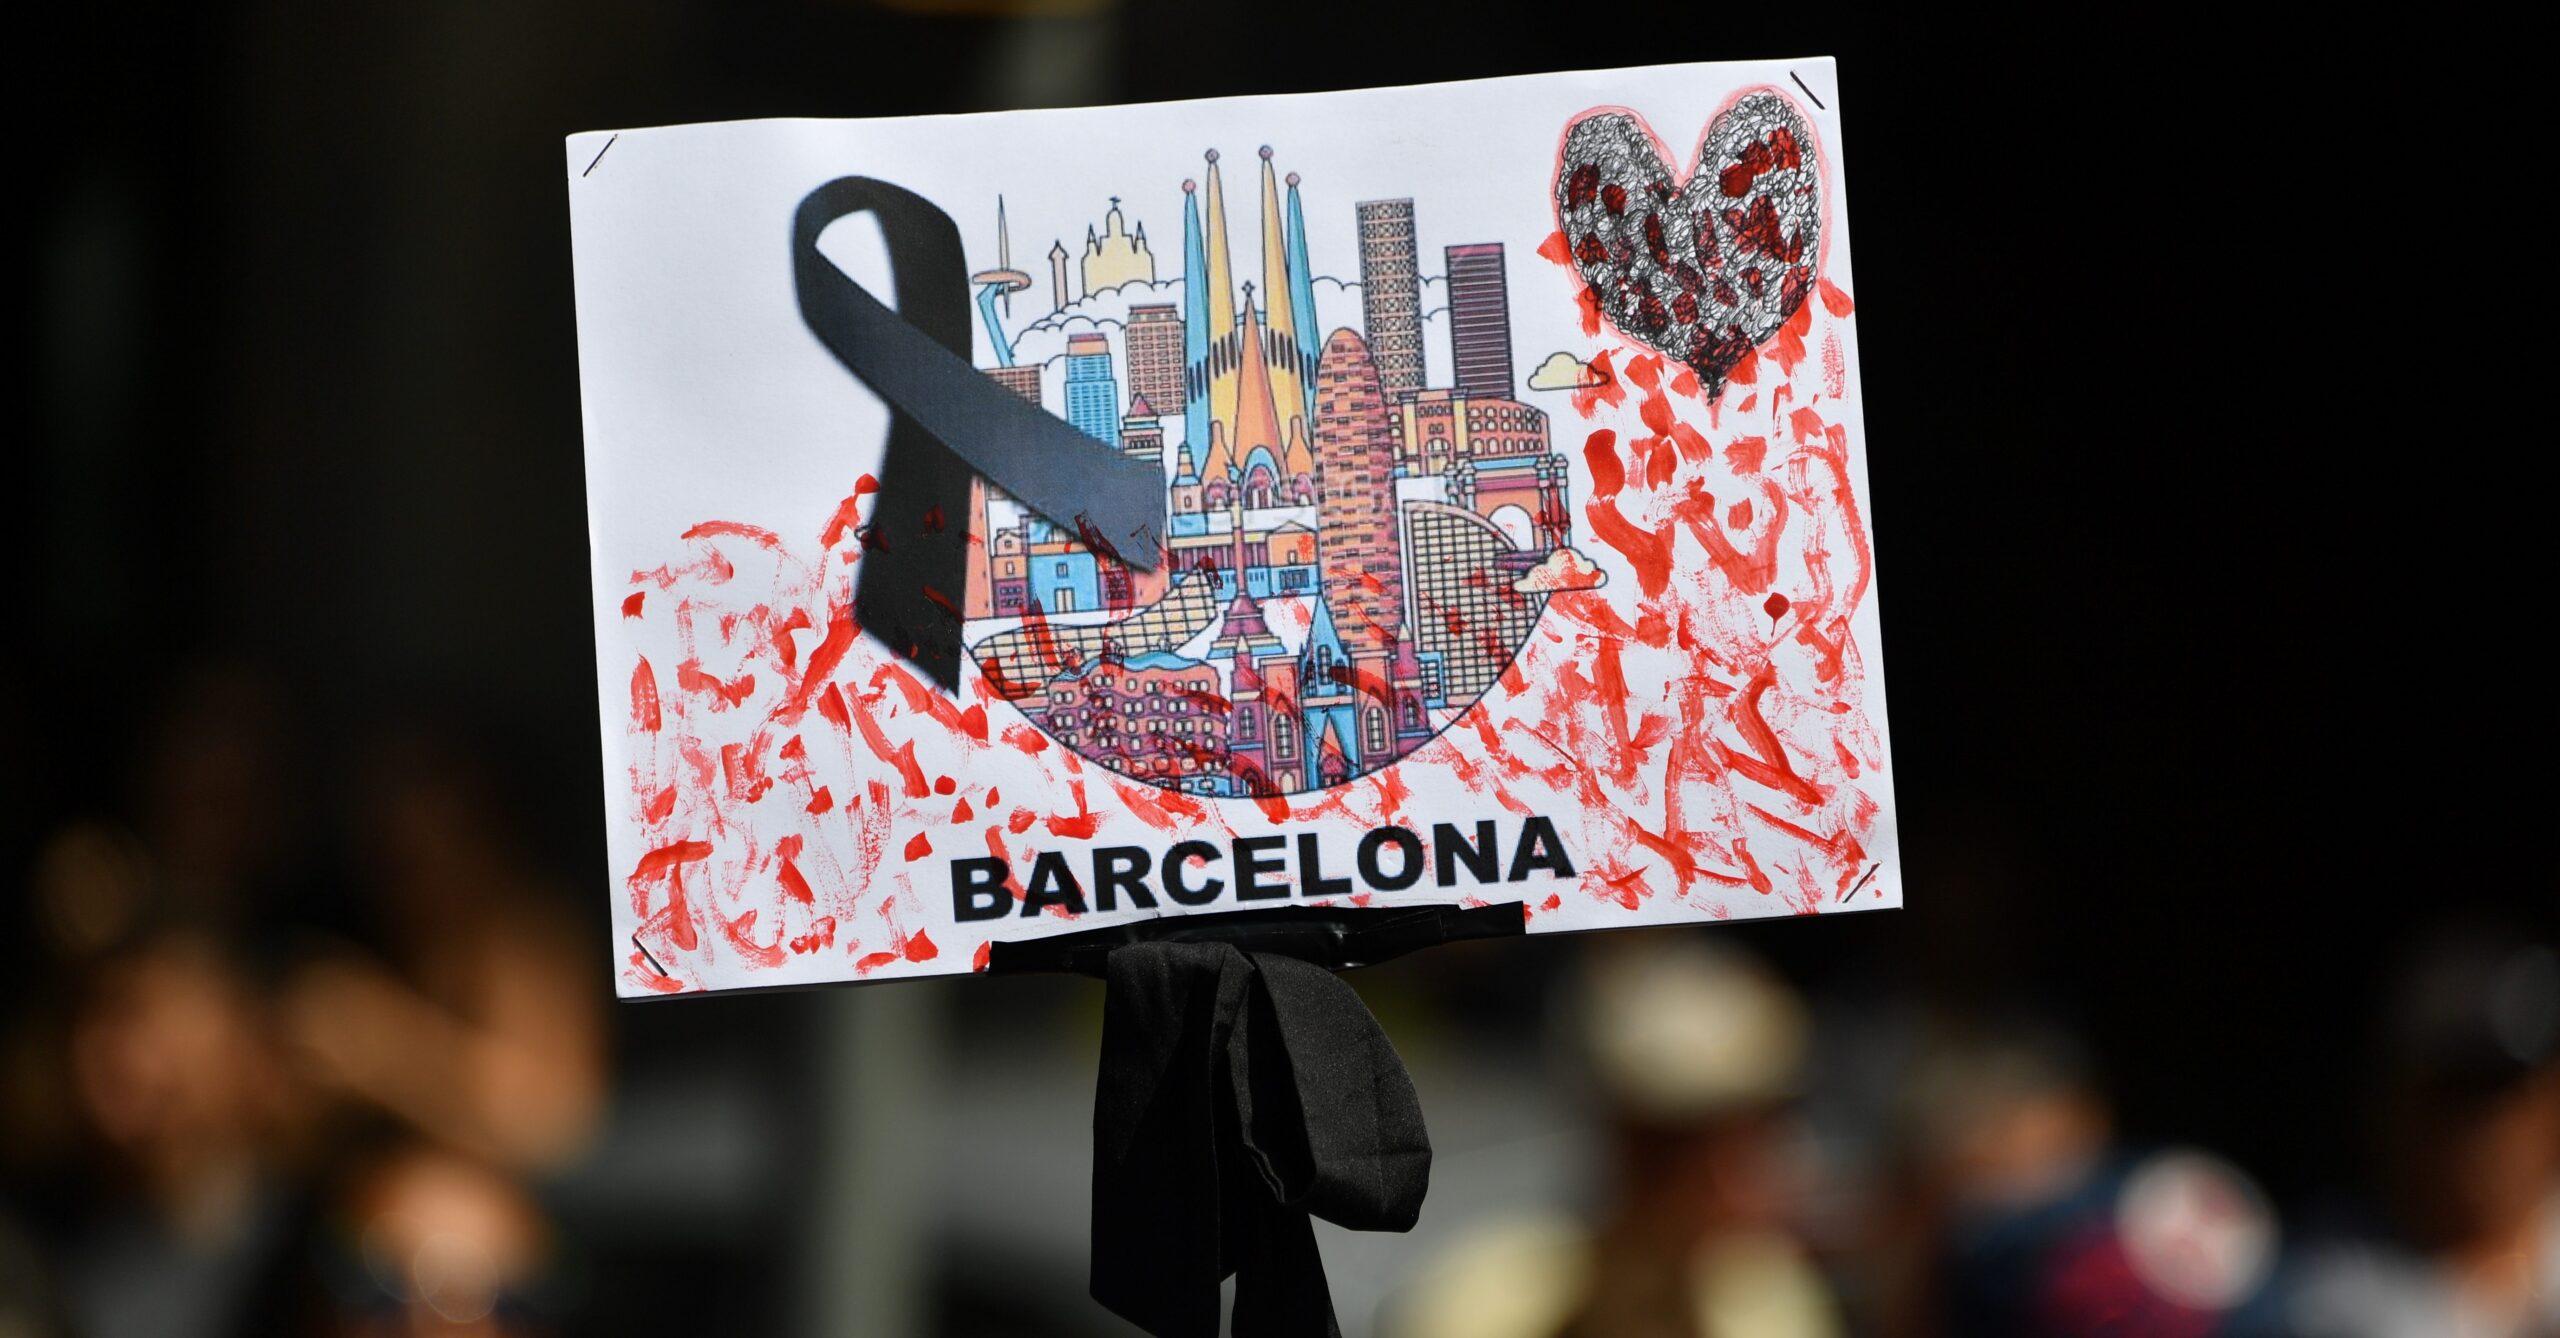 No tengo miedo, el grito de miles en Barcelona tras los atentados terroristas